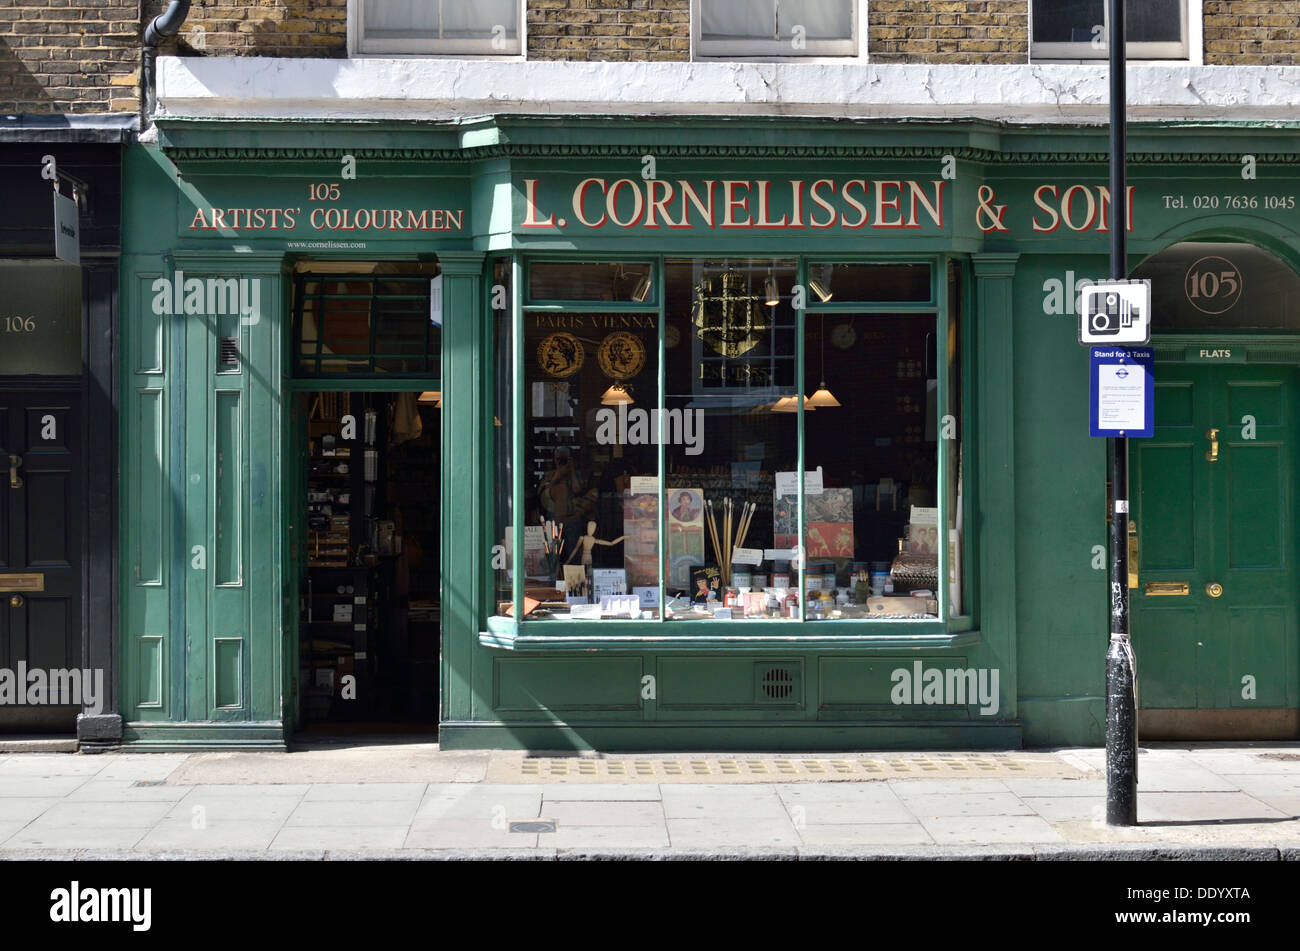 L Cornelissen & Sohn Künstlers Lieferant in Great Russell Street, Bloomsbury, London, UK. Stockfoto